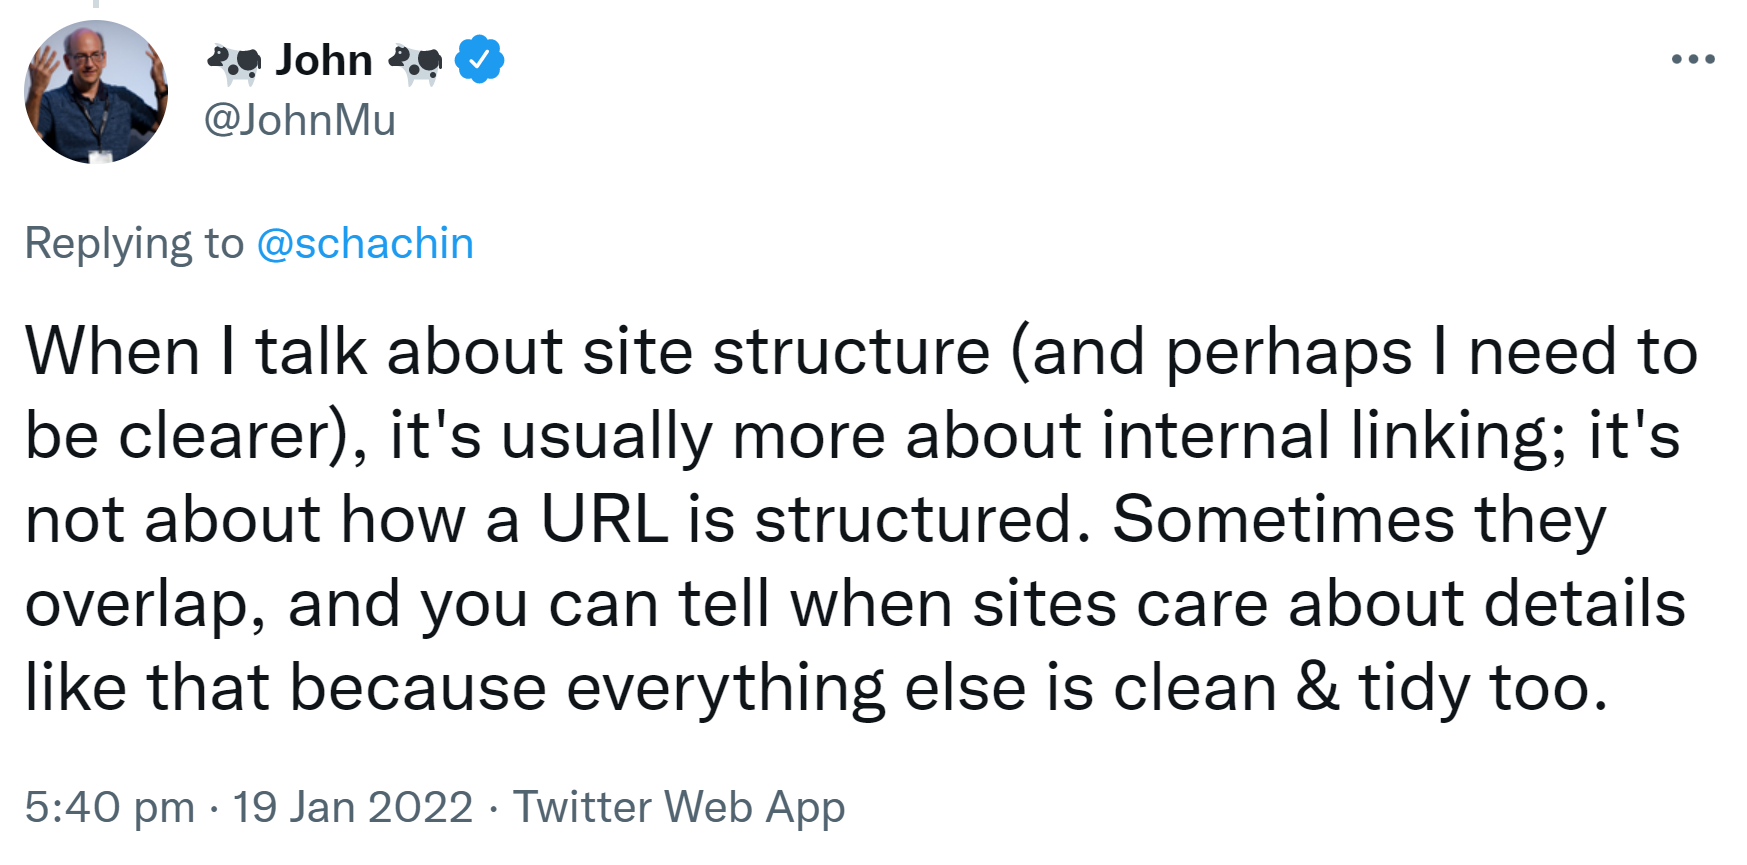 Google: Website-Struktur bezieht sich auf interne Links, nicht auf die URL-Struktur